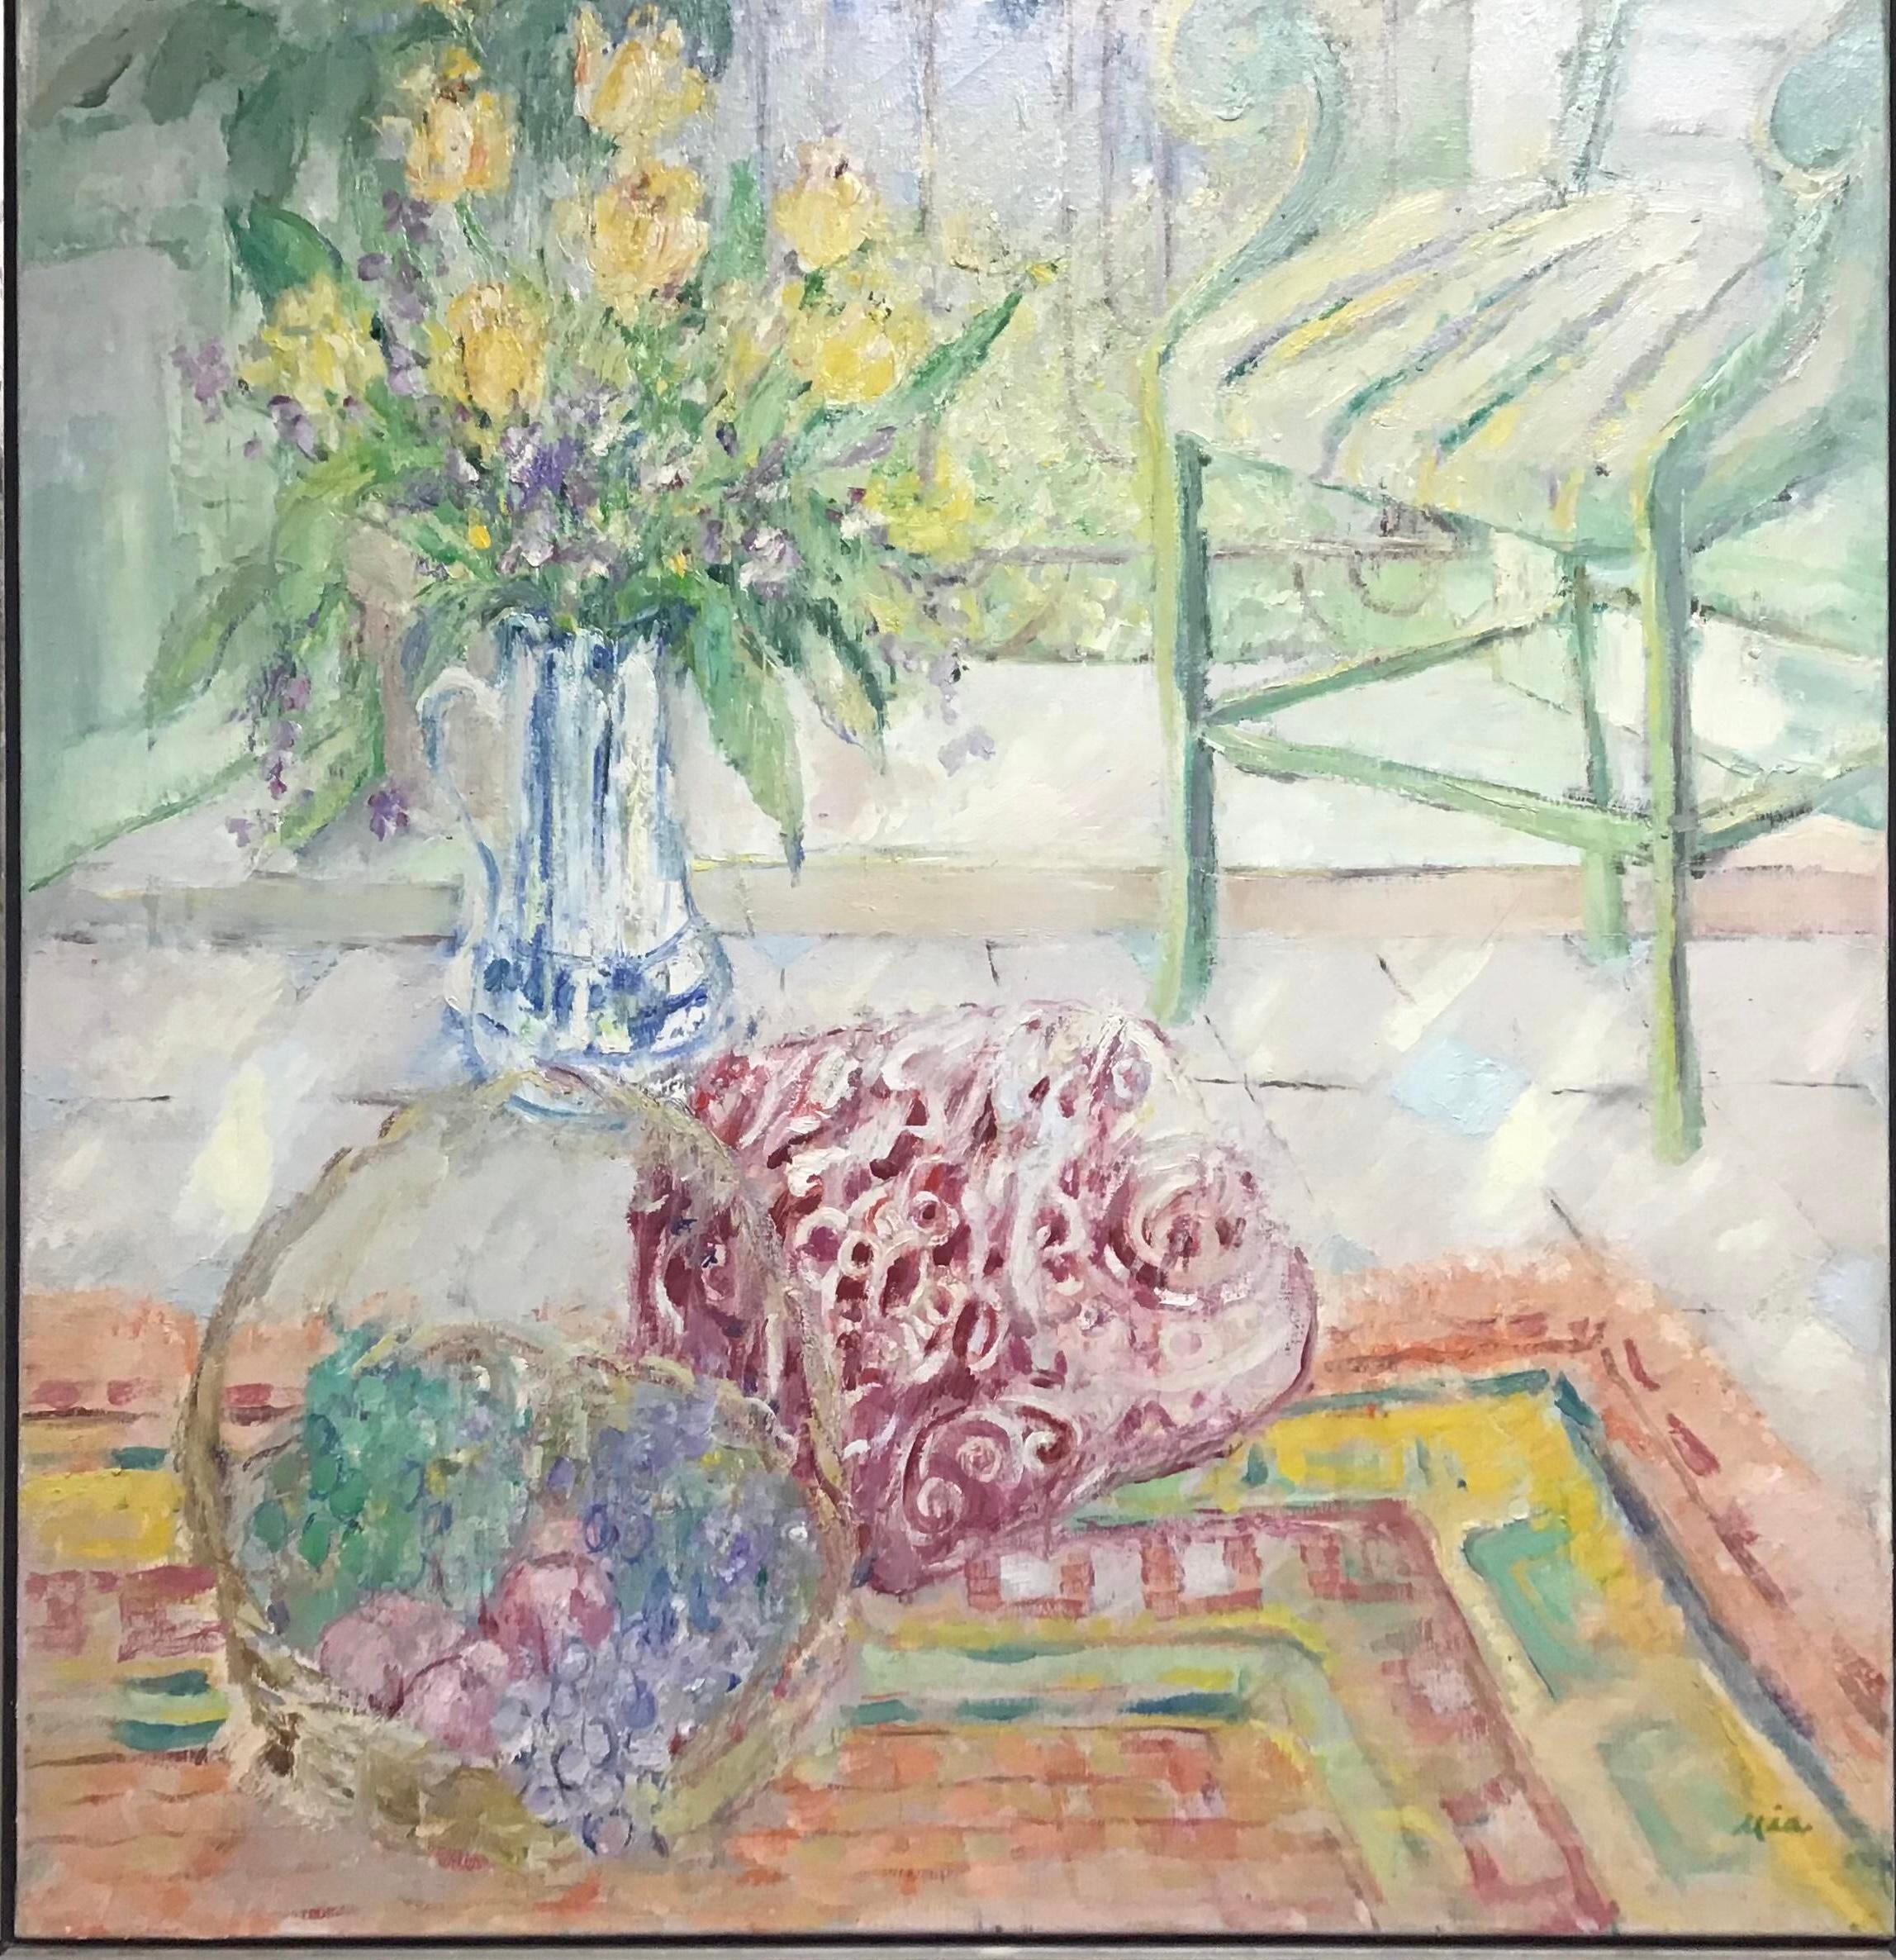 Precioso gran cuadro original al óleo sobre lienzo de bodegón de jarrón de flores sentado en una mesa frente a una ventana junto a una silla. Estilo impresionista con pintura de fuerte empaste en estilo colorista. Alojada en un fino marco moderno de